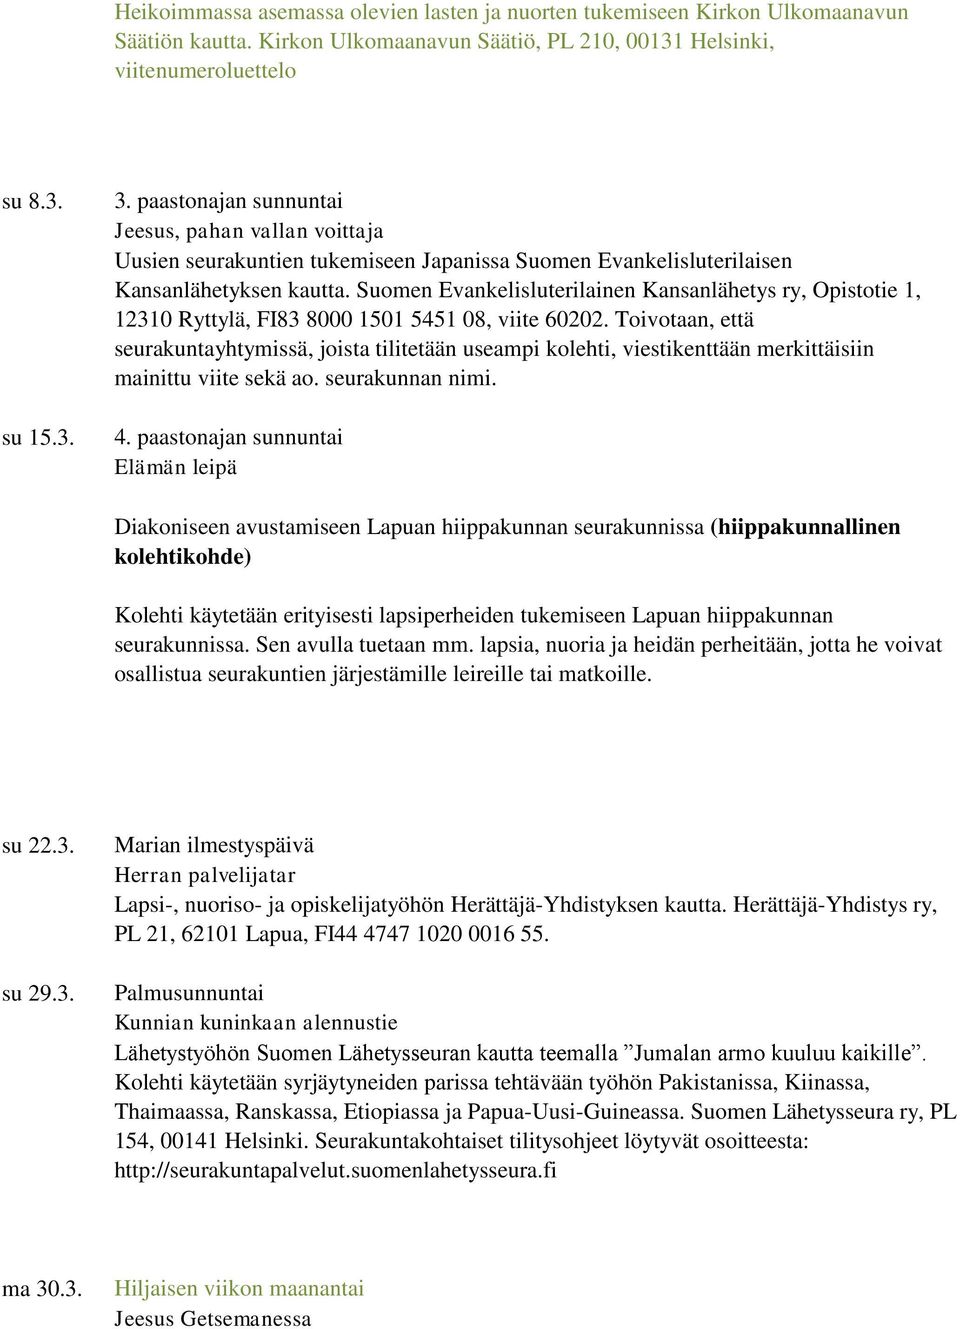 Suomen Evankelisluterilainen Kansanlähetys ry, Opistotie 1, 12310 Ryttylä, FI83 8000 1501 5451 08, viite 60202.